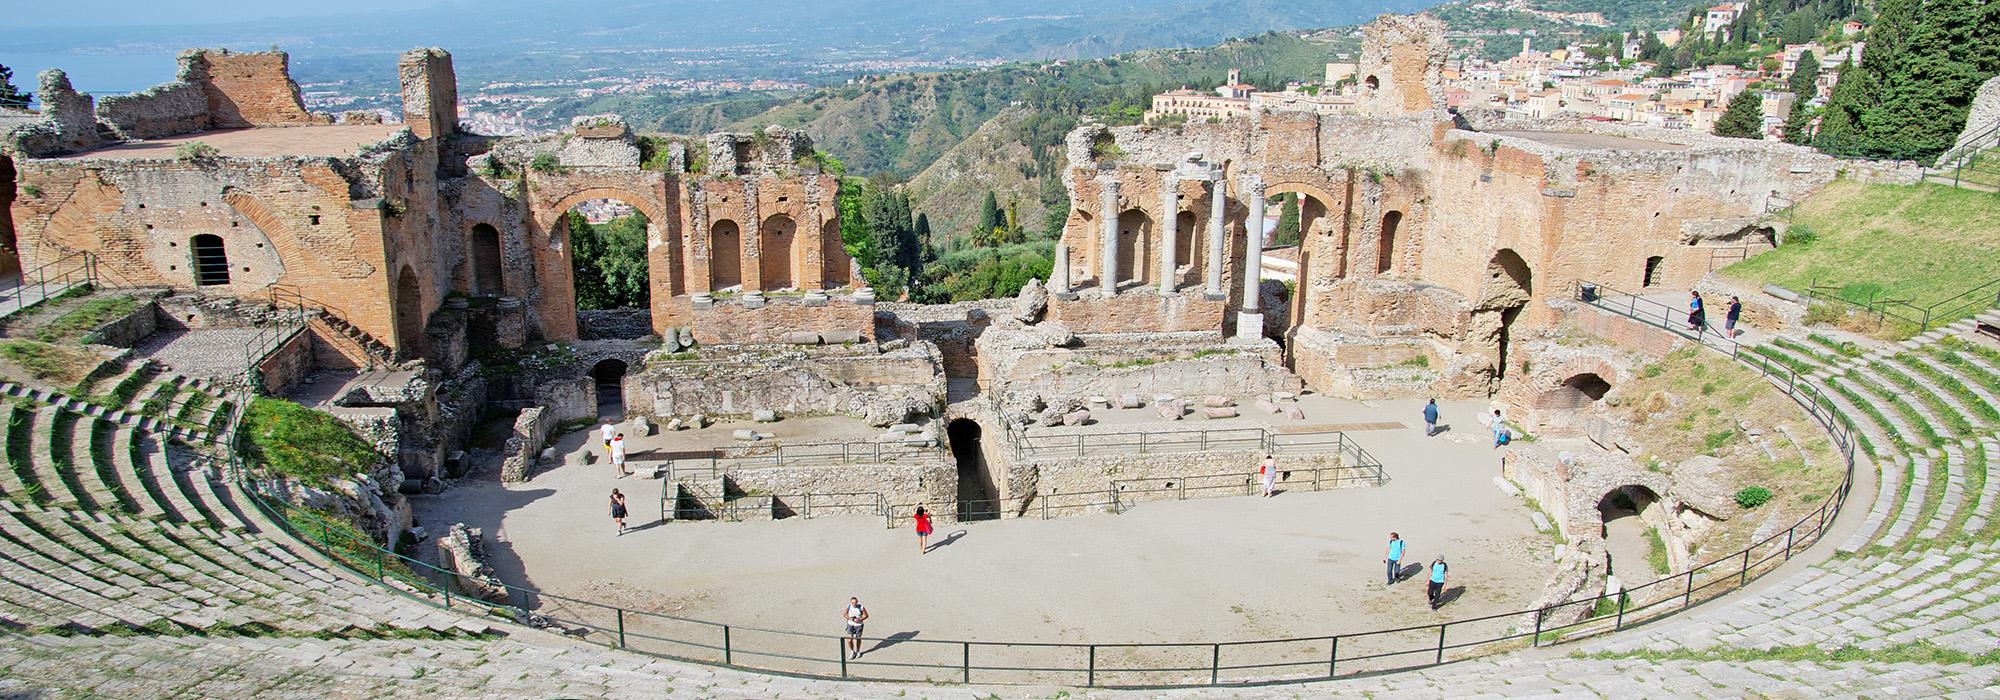 Greek Theatre of Taormina, Sicily, IT